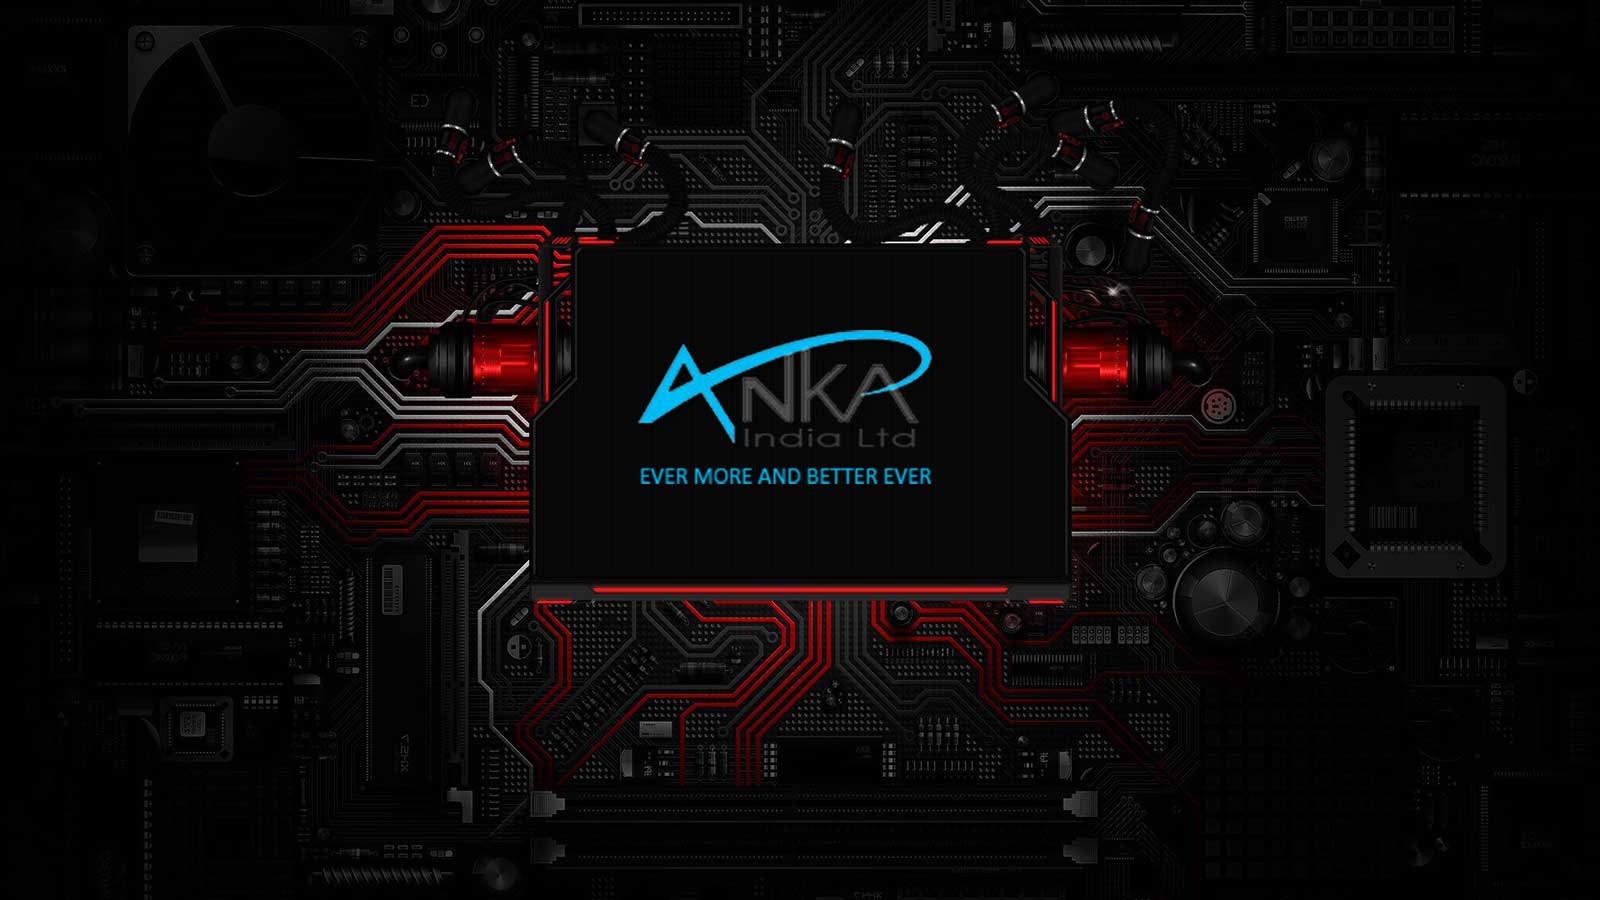 
              Anka India Ltd            